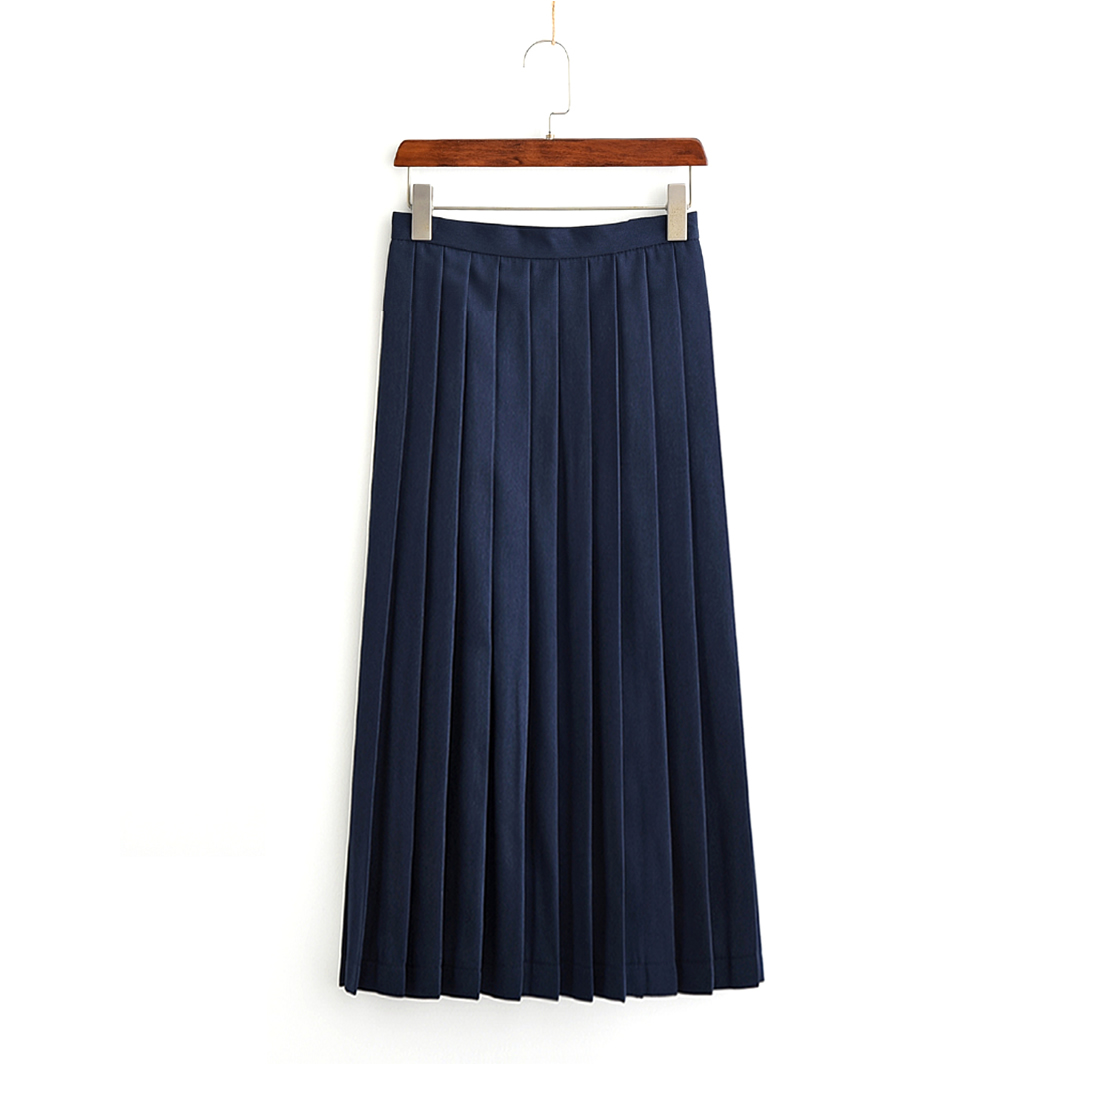 Navy blue, long skirt (80 cm)